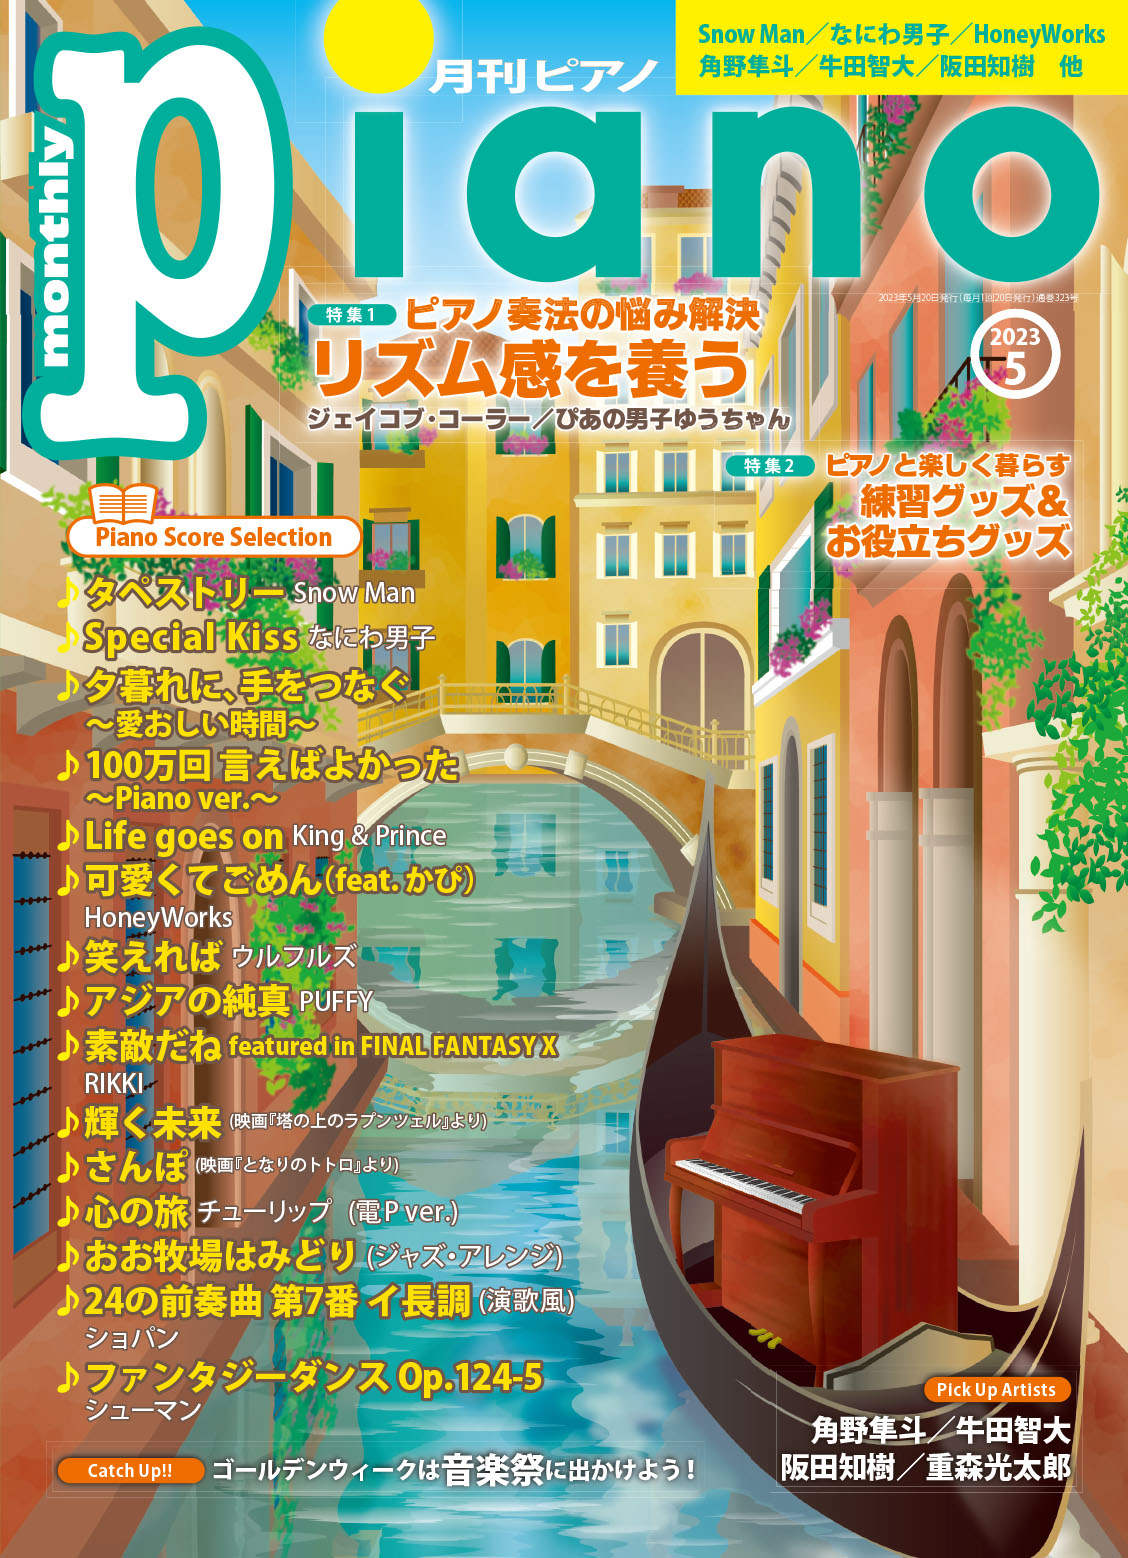 ボカロ曲を弾いてみよう (月刊ピアノ2012年7月号増刊) 【60%OFF